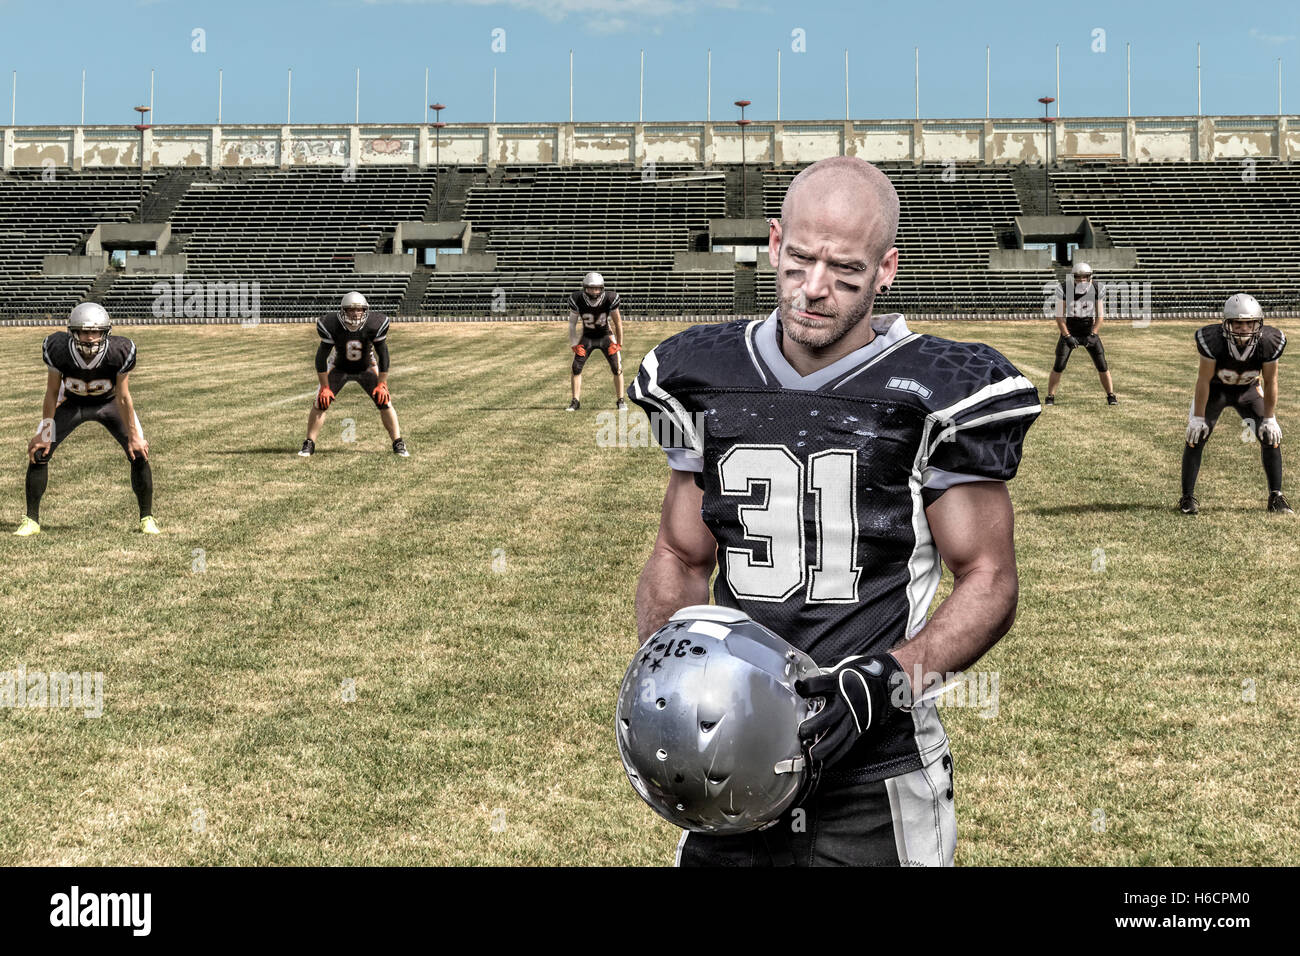 Porträt von ein ernst aussehende american-Football-Spieler, der in einem desolaten Stadion steht. Stockfoto